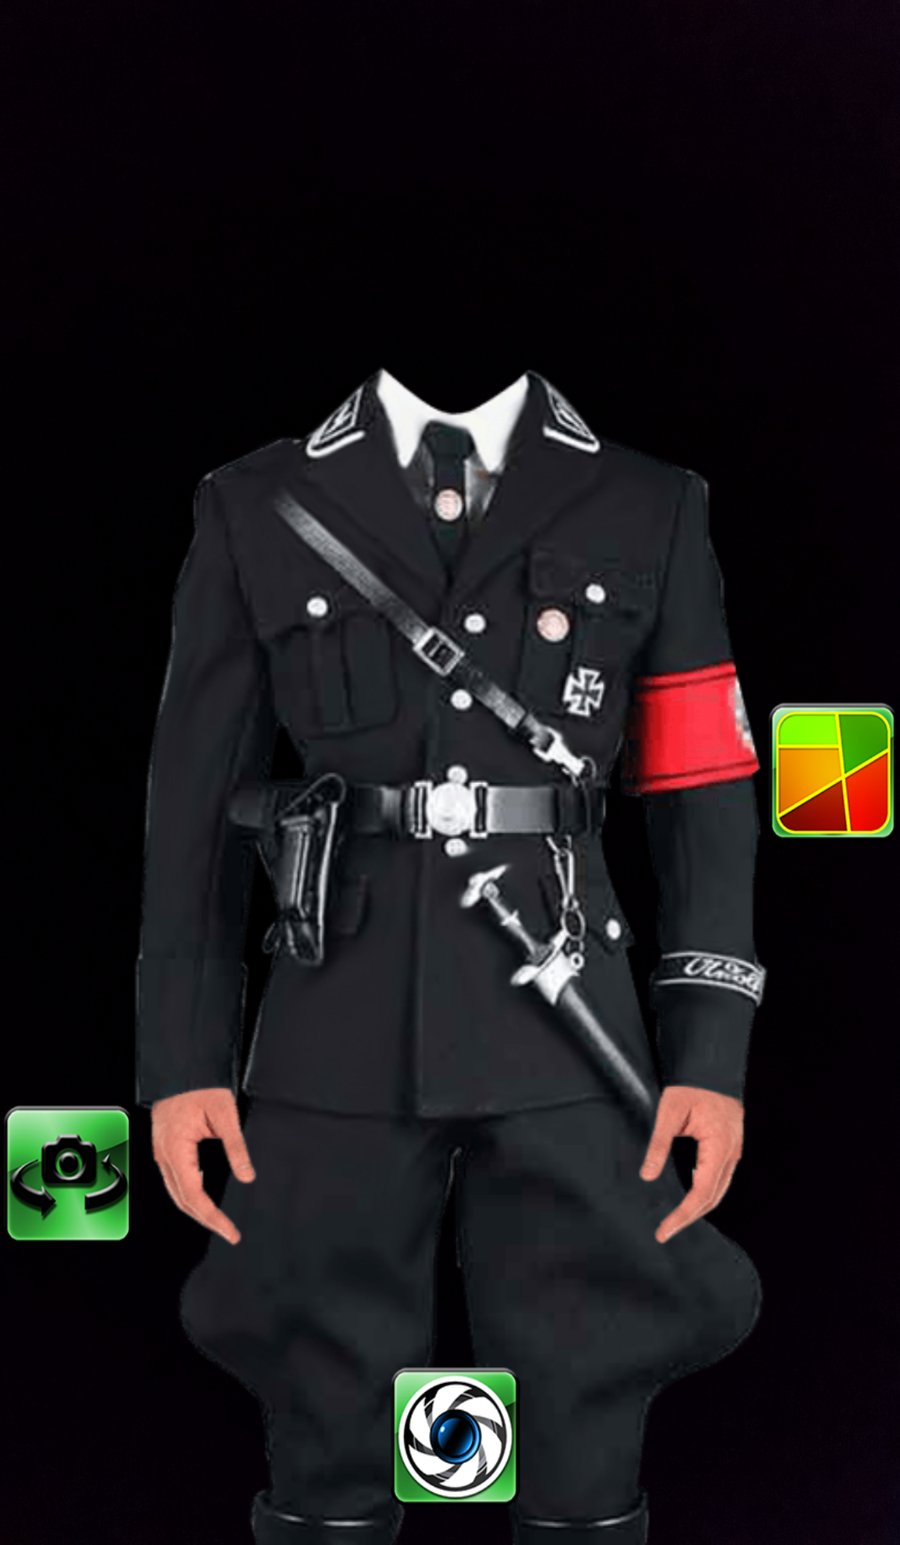 אפליקציה מציגה: צילום במדי הצבא הנאצי